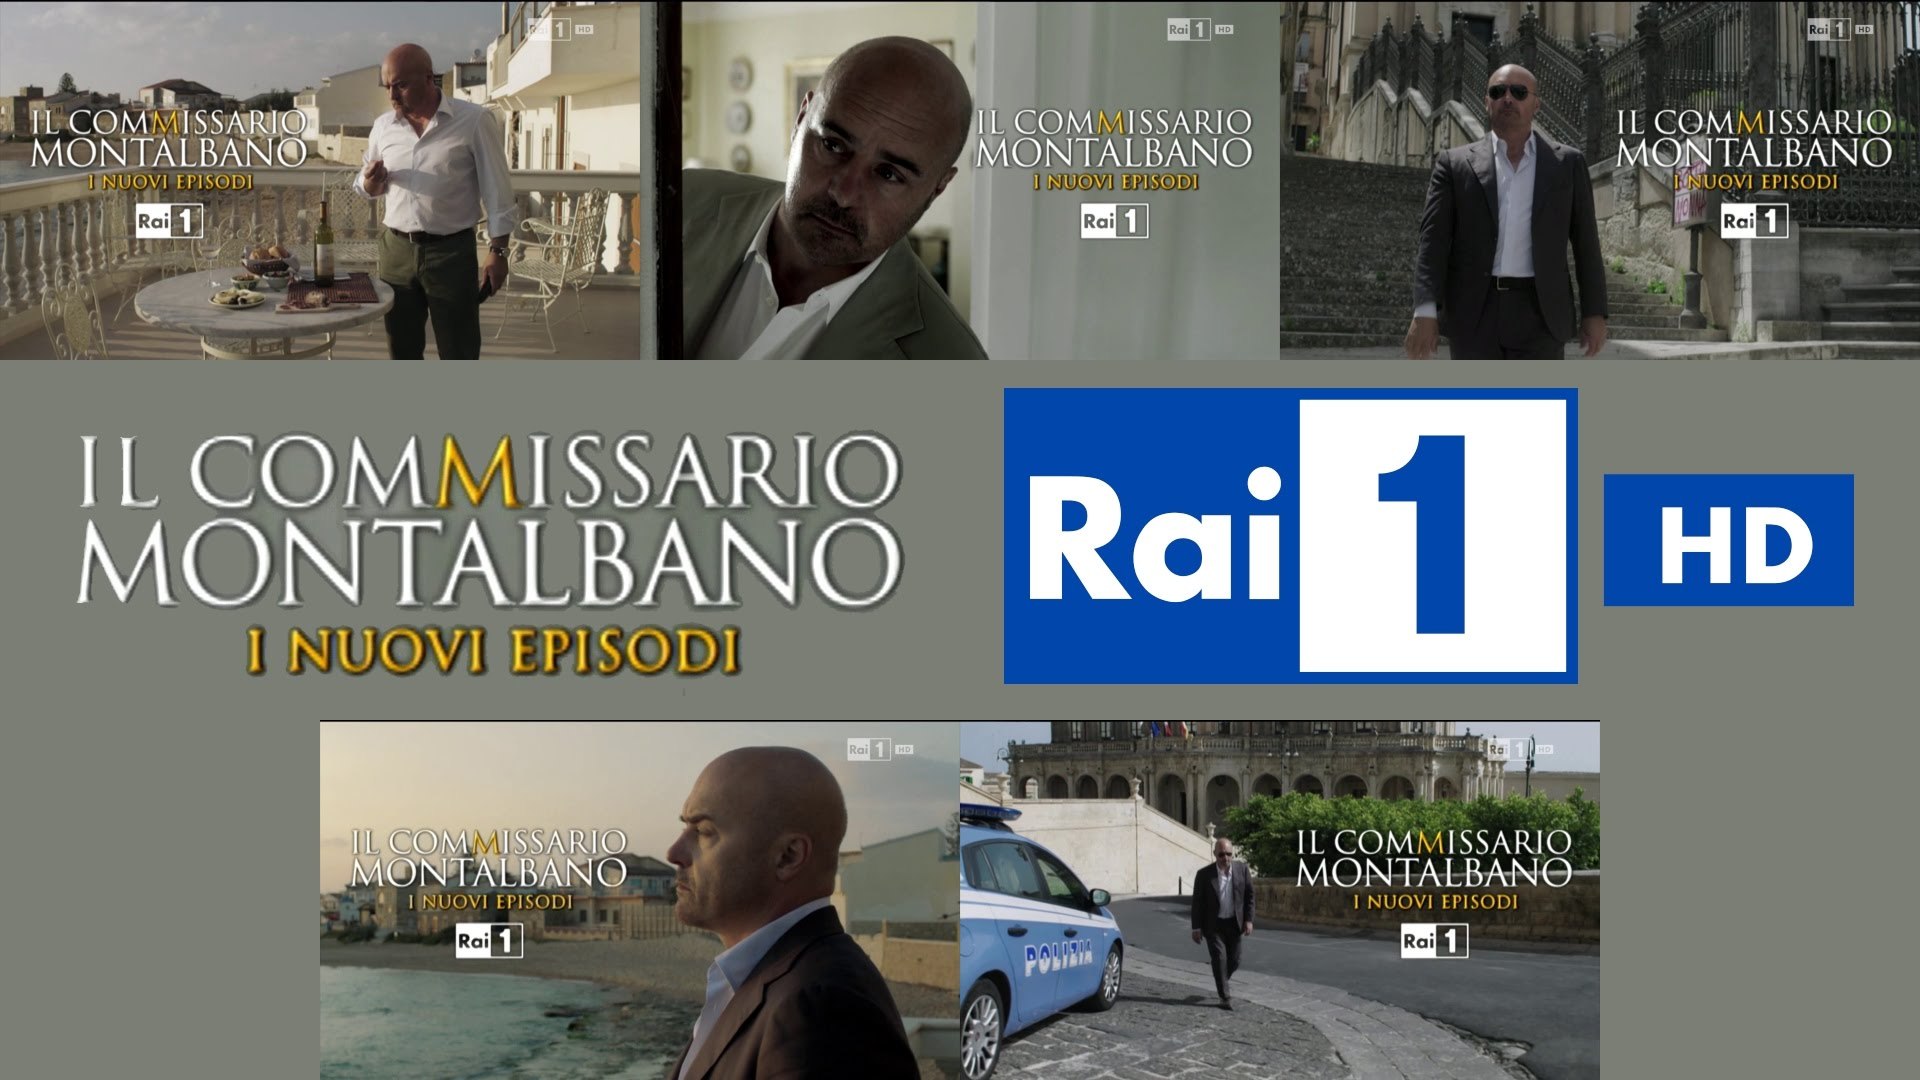 Rai 1 HD - Bumper "Il Commissario Montalbano" - Raccolta completa (2016) -  Video Dailymotion